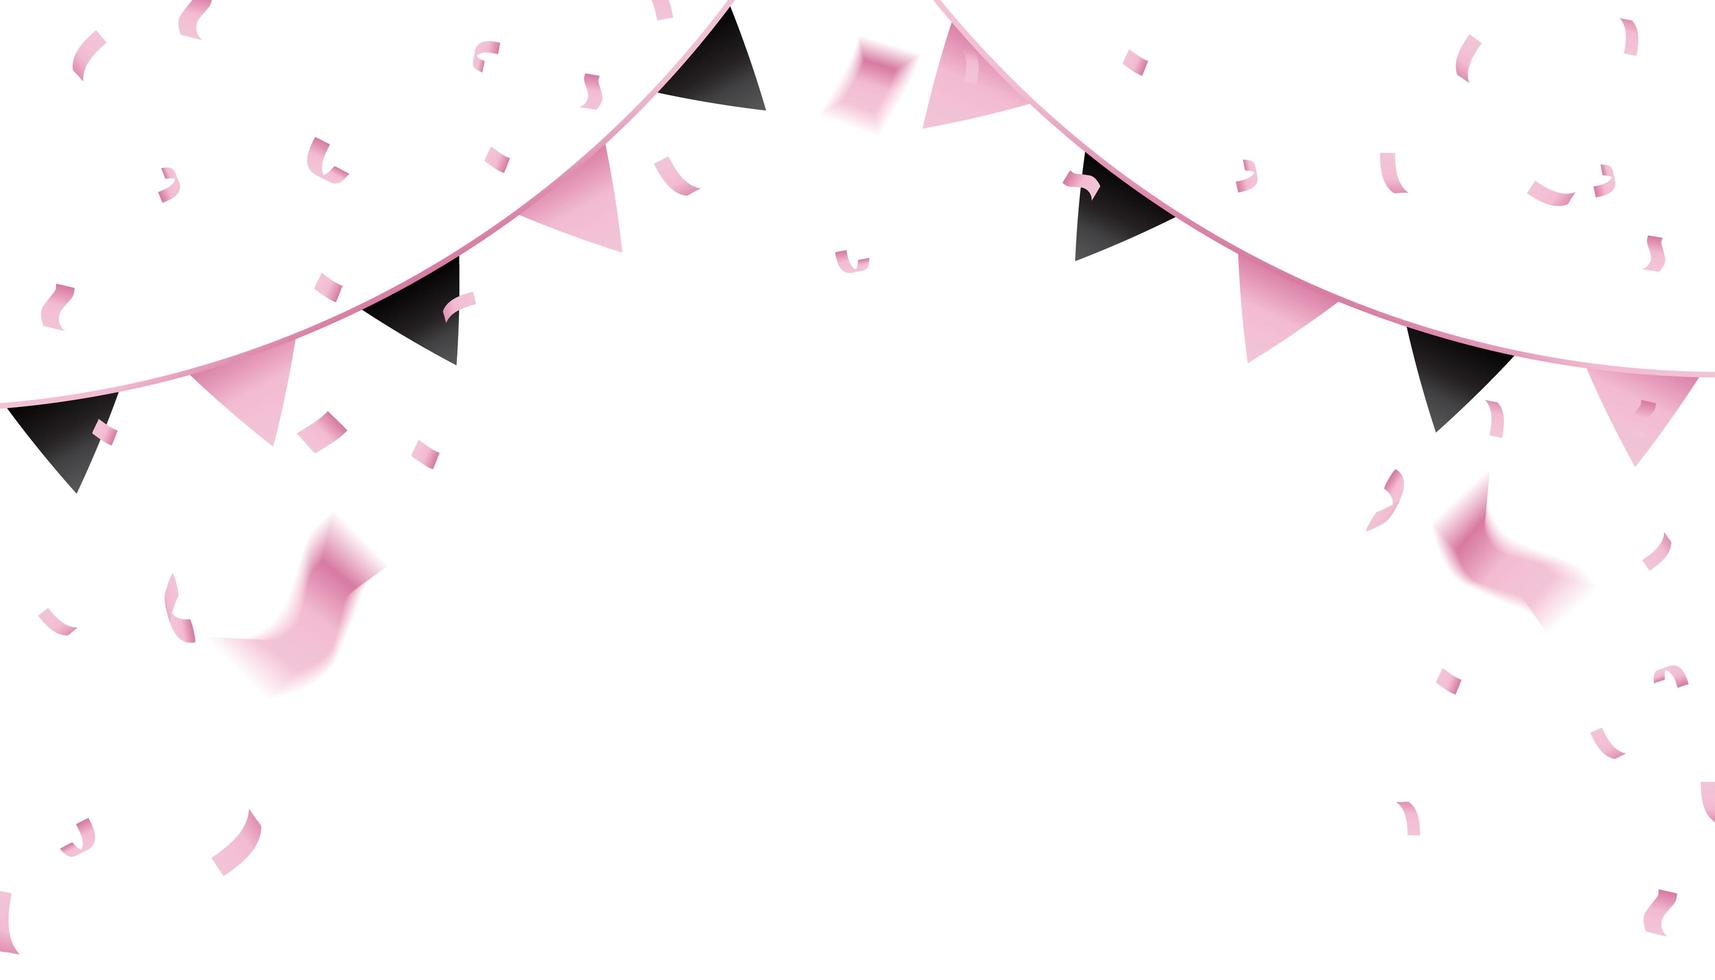 Banderines y confeti rosa y negro. vector